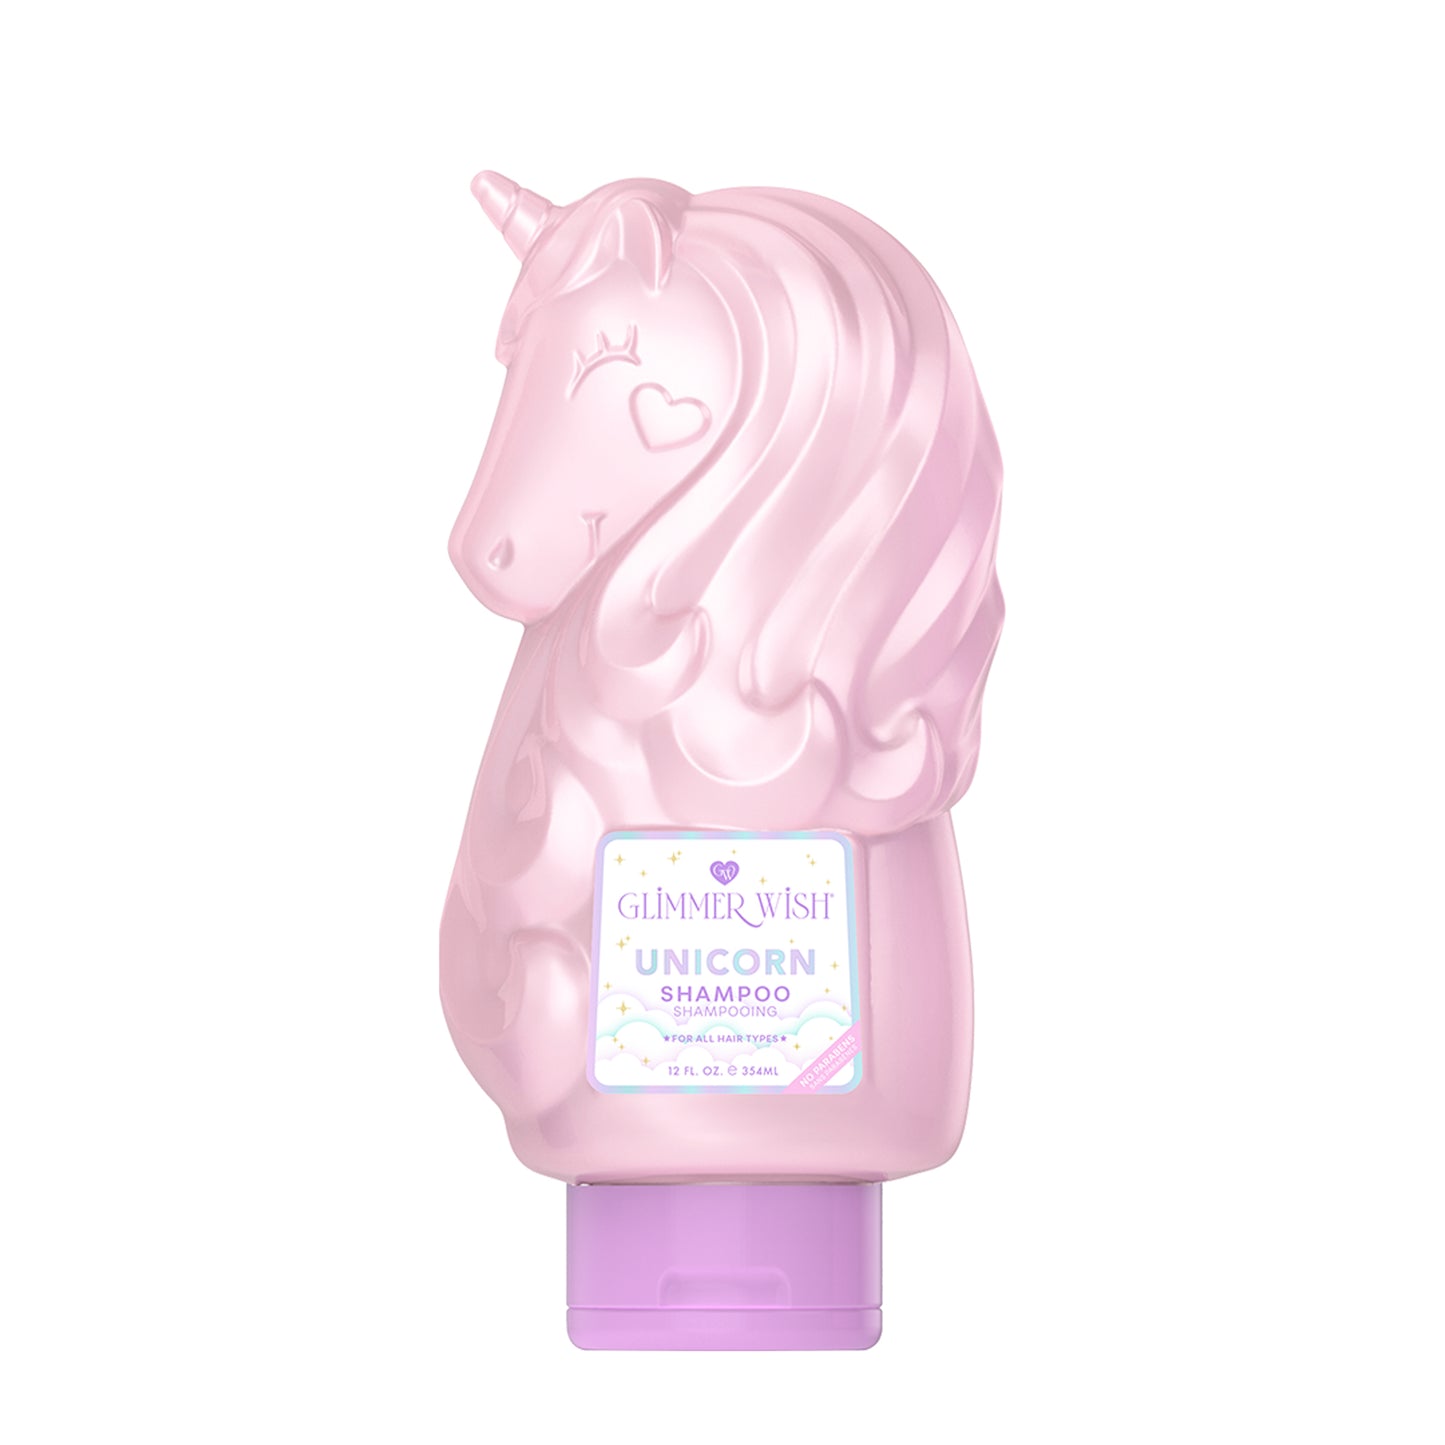 Supreme Unicorn Haircare Gift Set